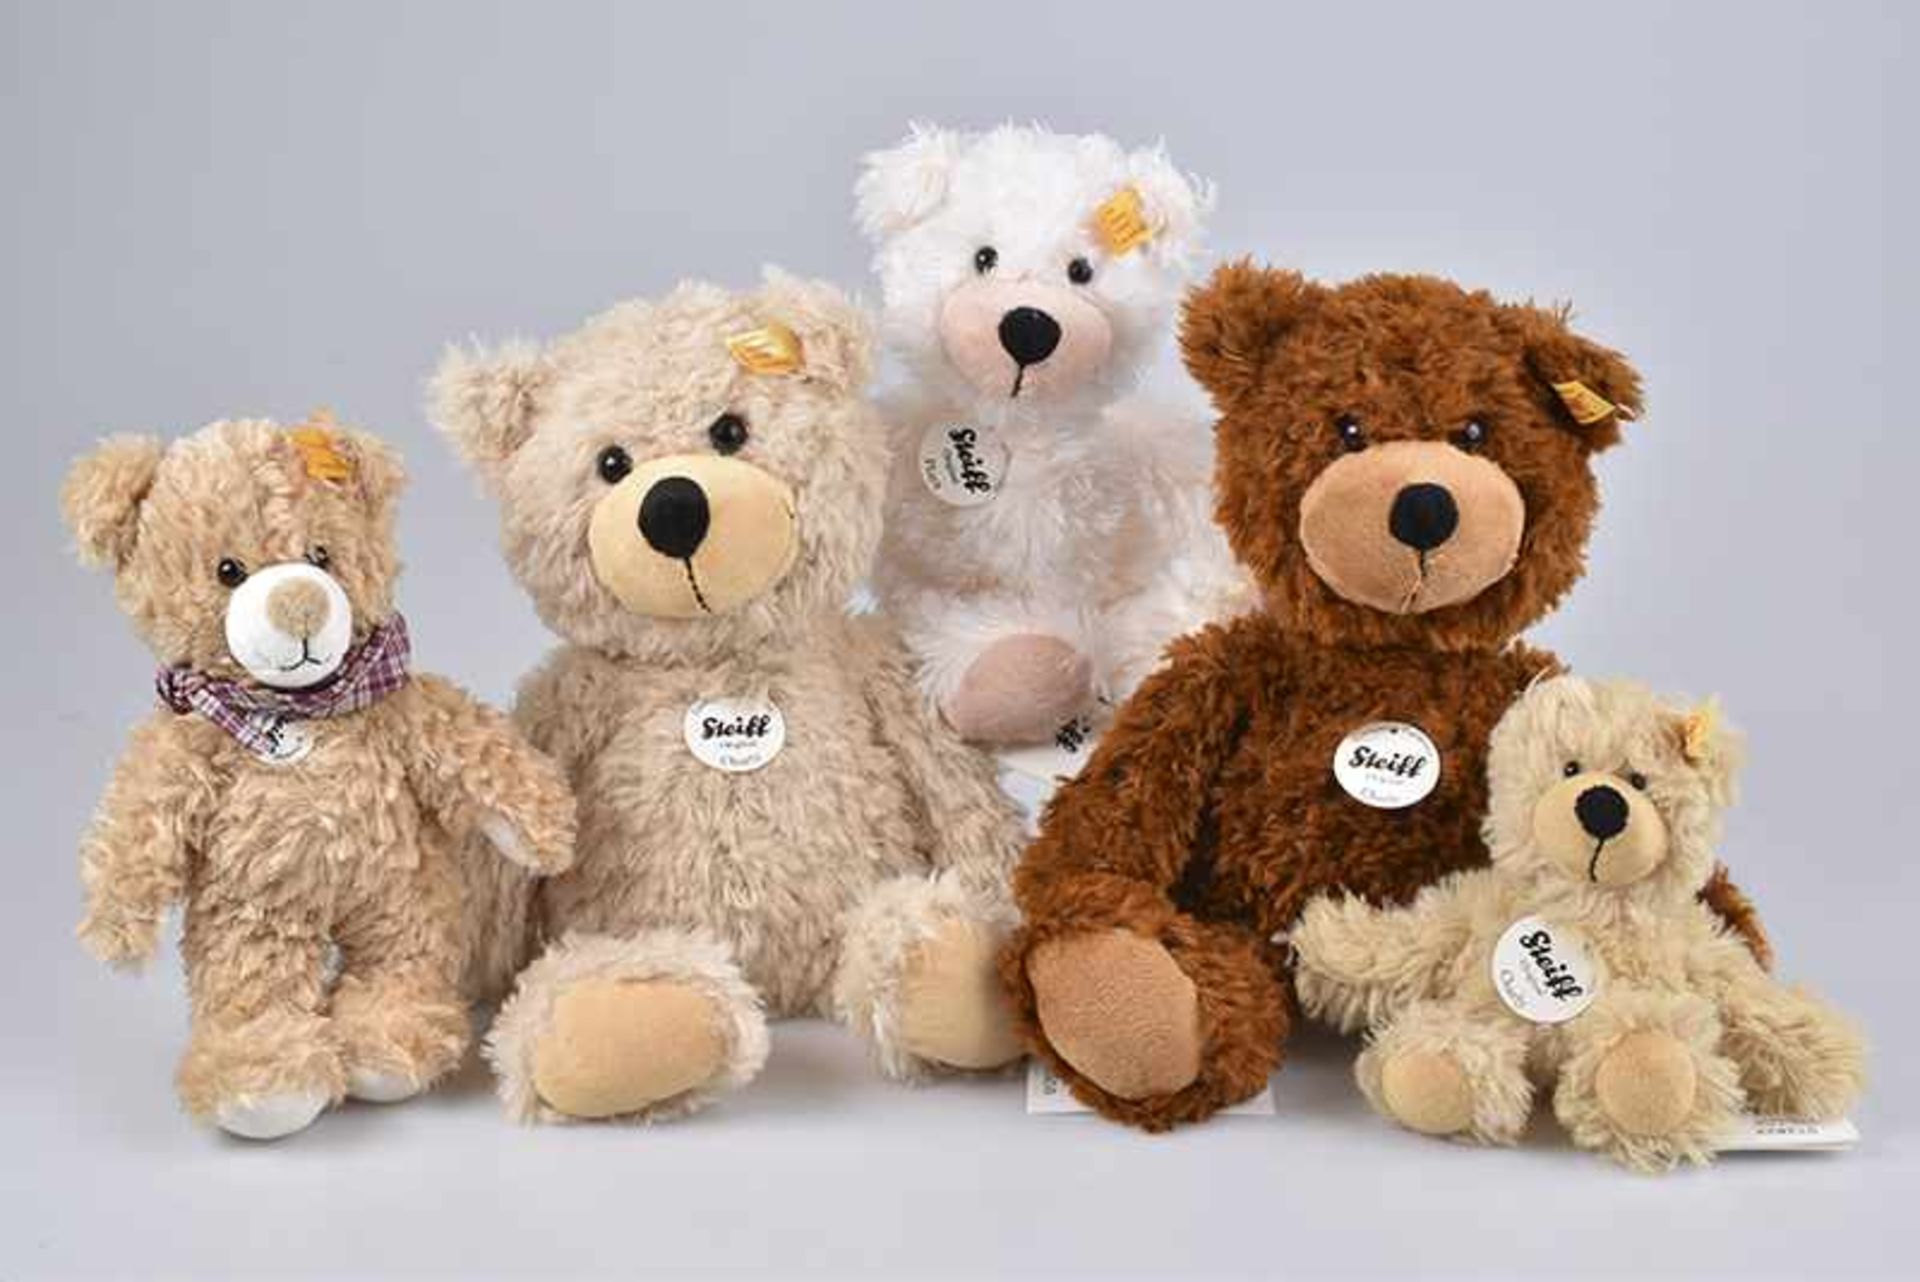 STEIFF 5 Teddybären, Plüsch, "Charly", KFS, Nr. 012808, beige, "Luise", KFS, Nr. 022982, beige, "